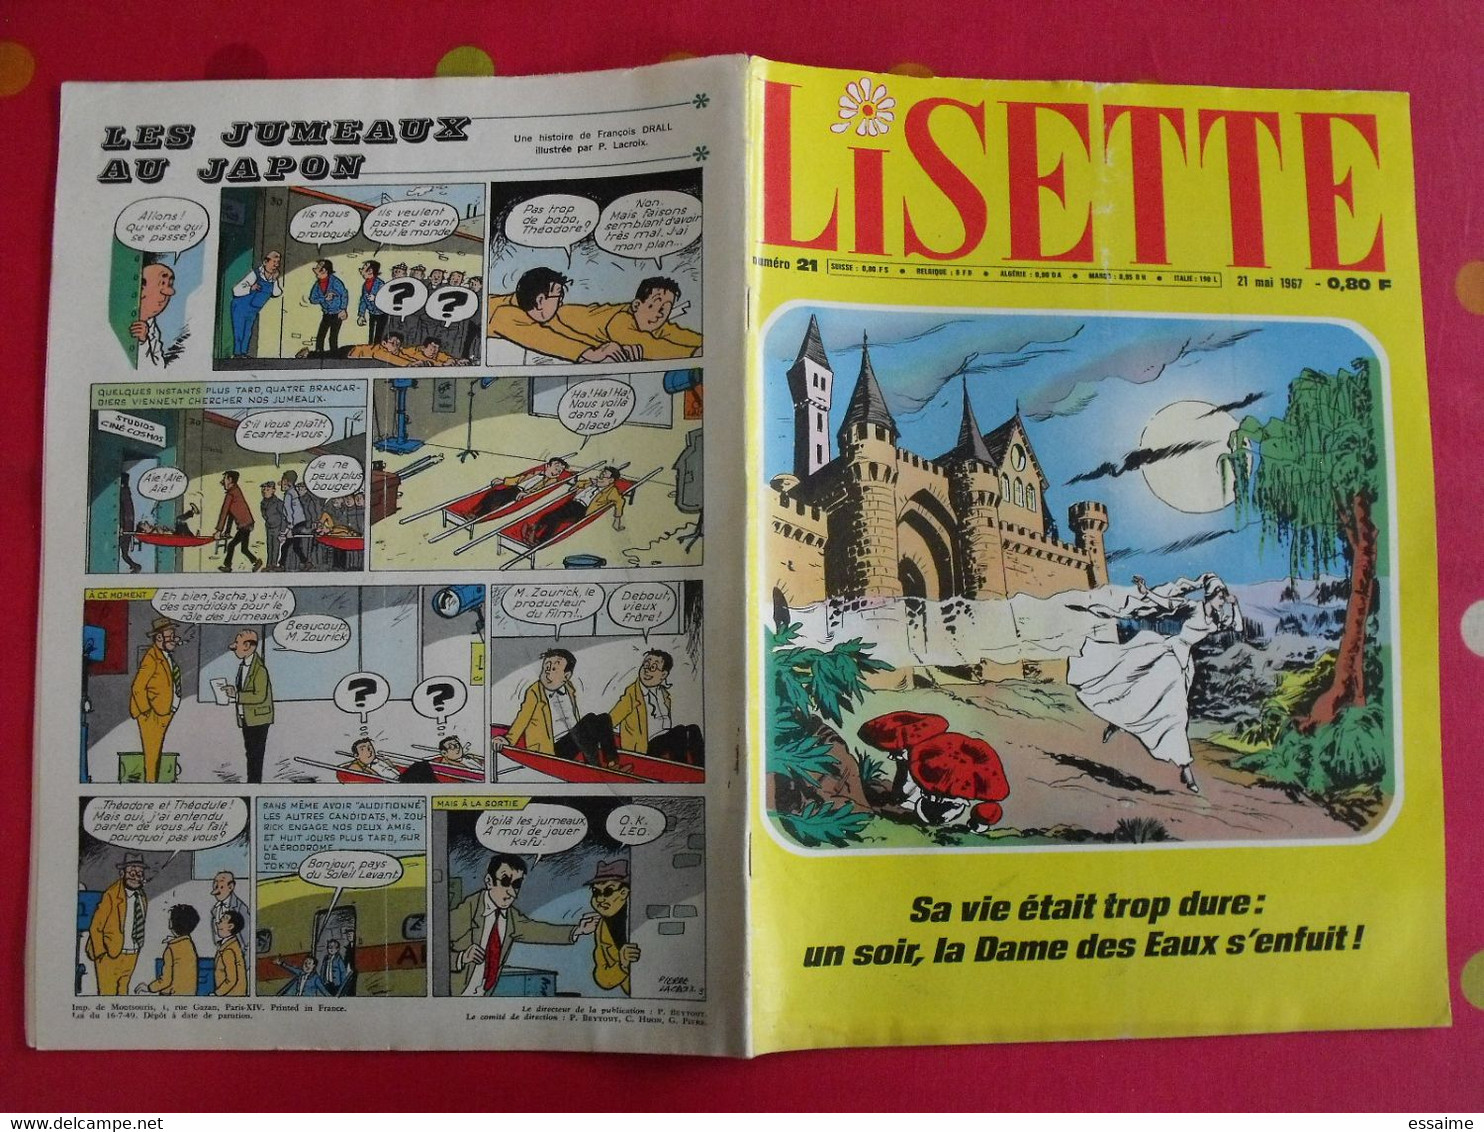 Lisette. 16 n° de 1967. lacroix lay tiky fusco francey marcello dufossé trubert dutronc. à redécouvrir G.H.